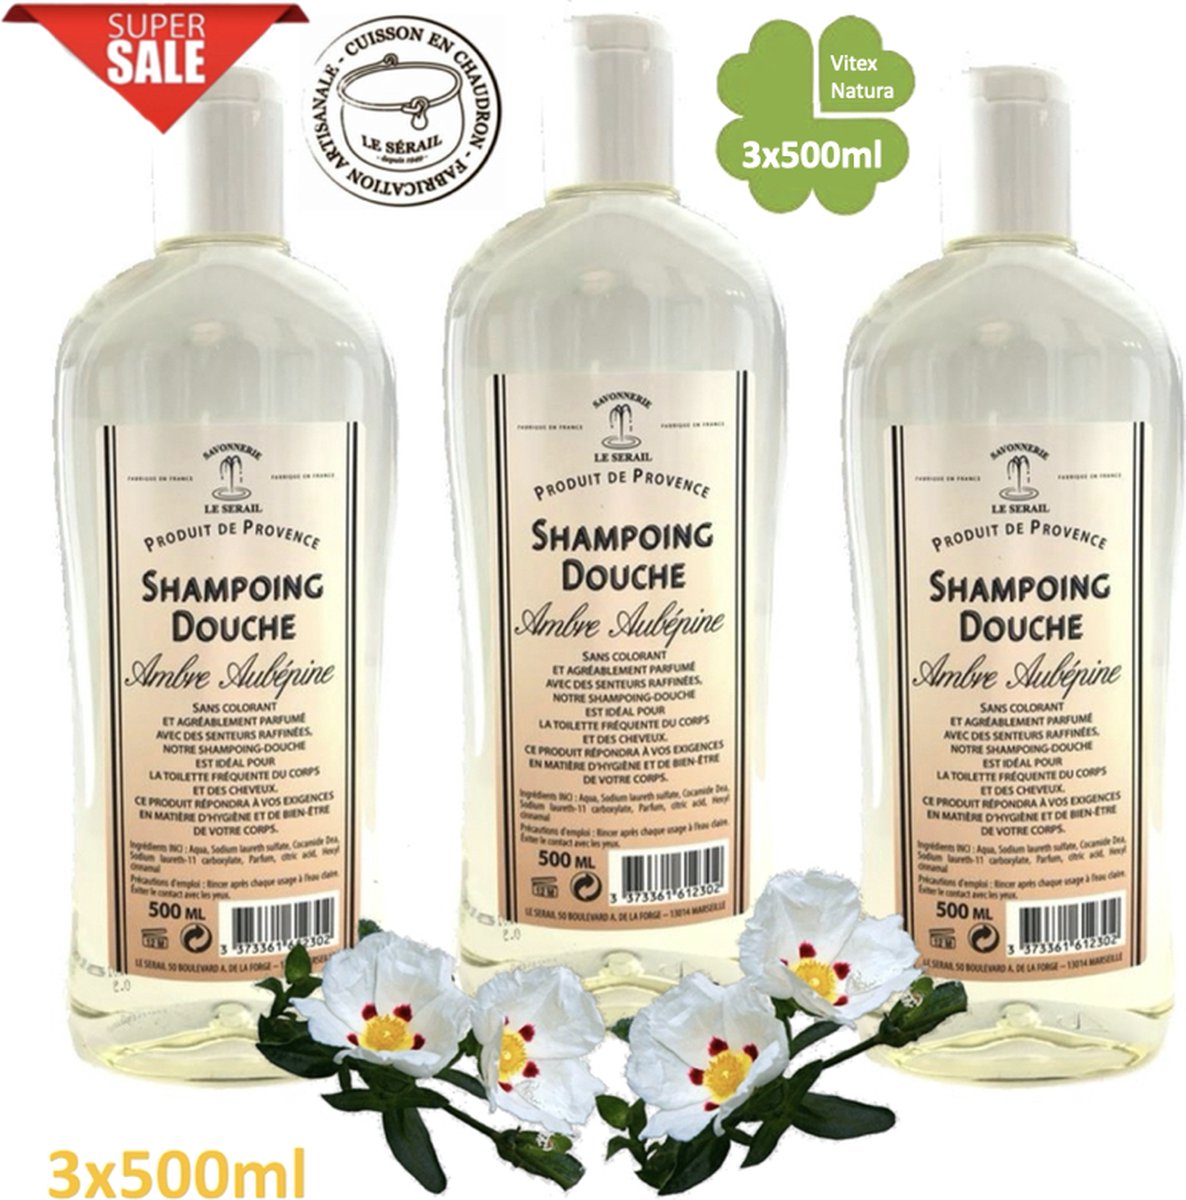 Echte AMBER shampoo douche 3x500ml VOORDEEL pakket. Biologisch ecologisch. Le Serail. HEERLIJK GEURENDE Originele Marseille zeep.